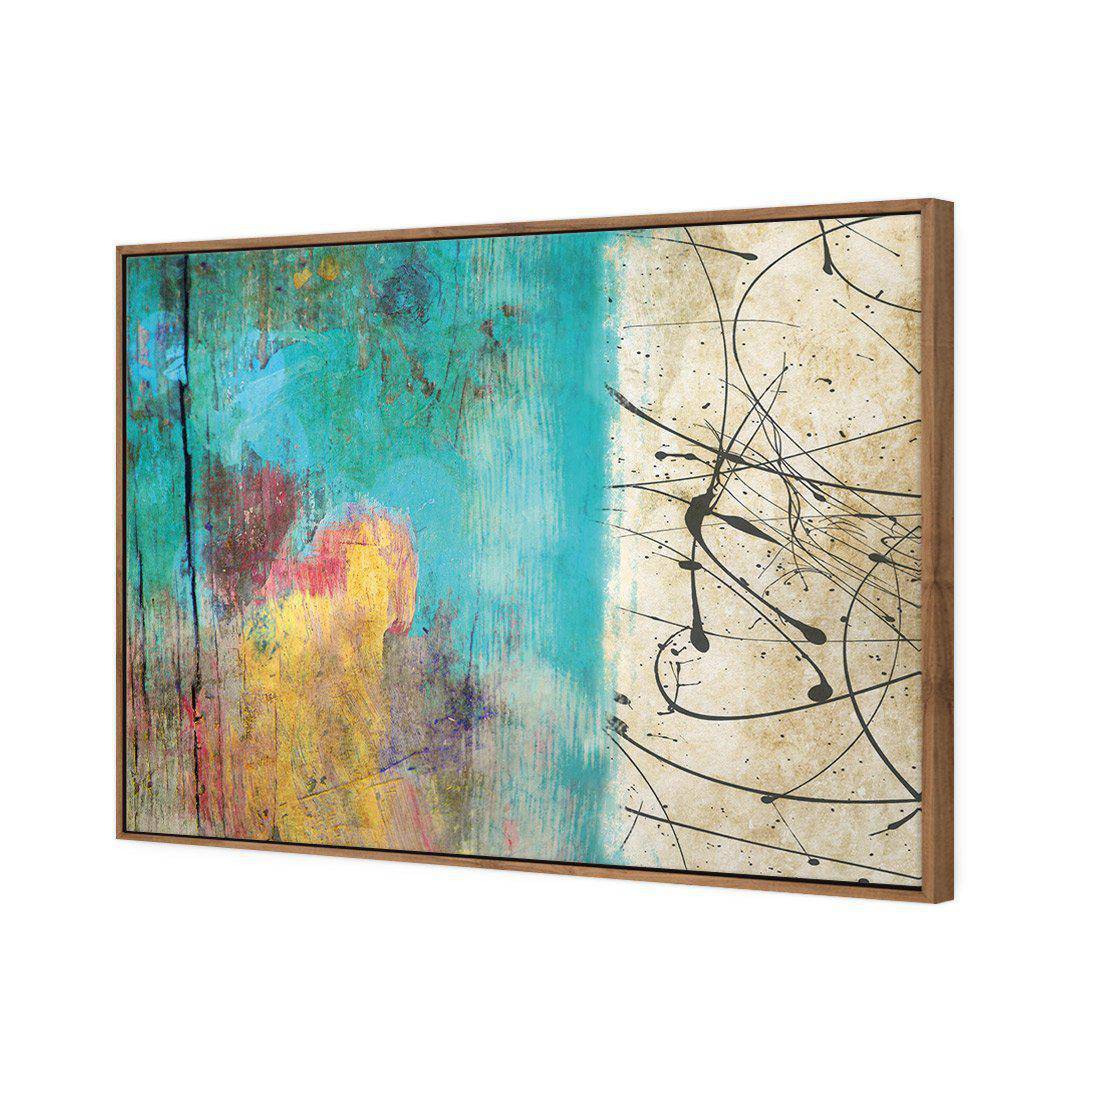 Painted Grunge Splatter Canvas Art-Canvas-Wall Art Designs-45x30cm-Canvas - Natural Frame-Wall Art Designs